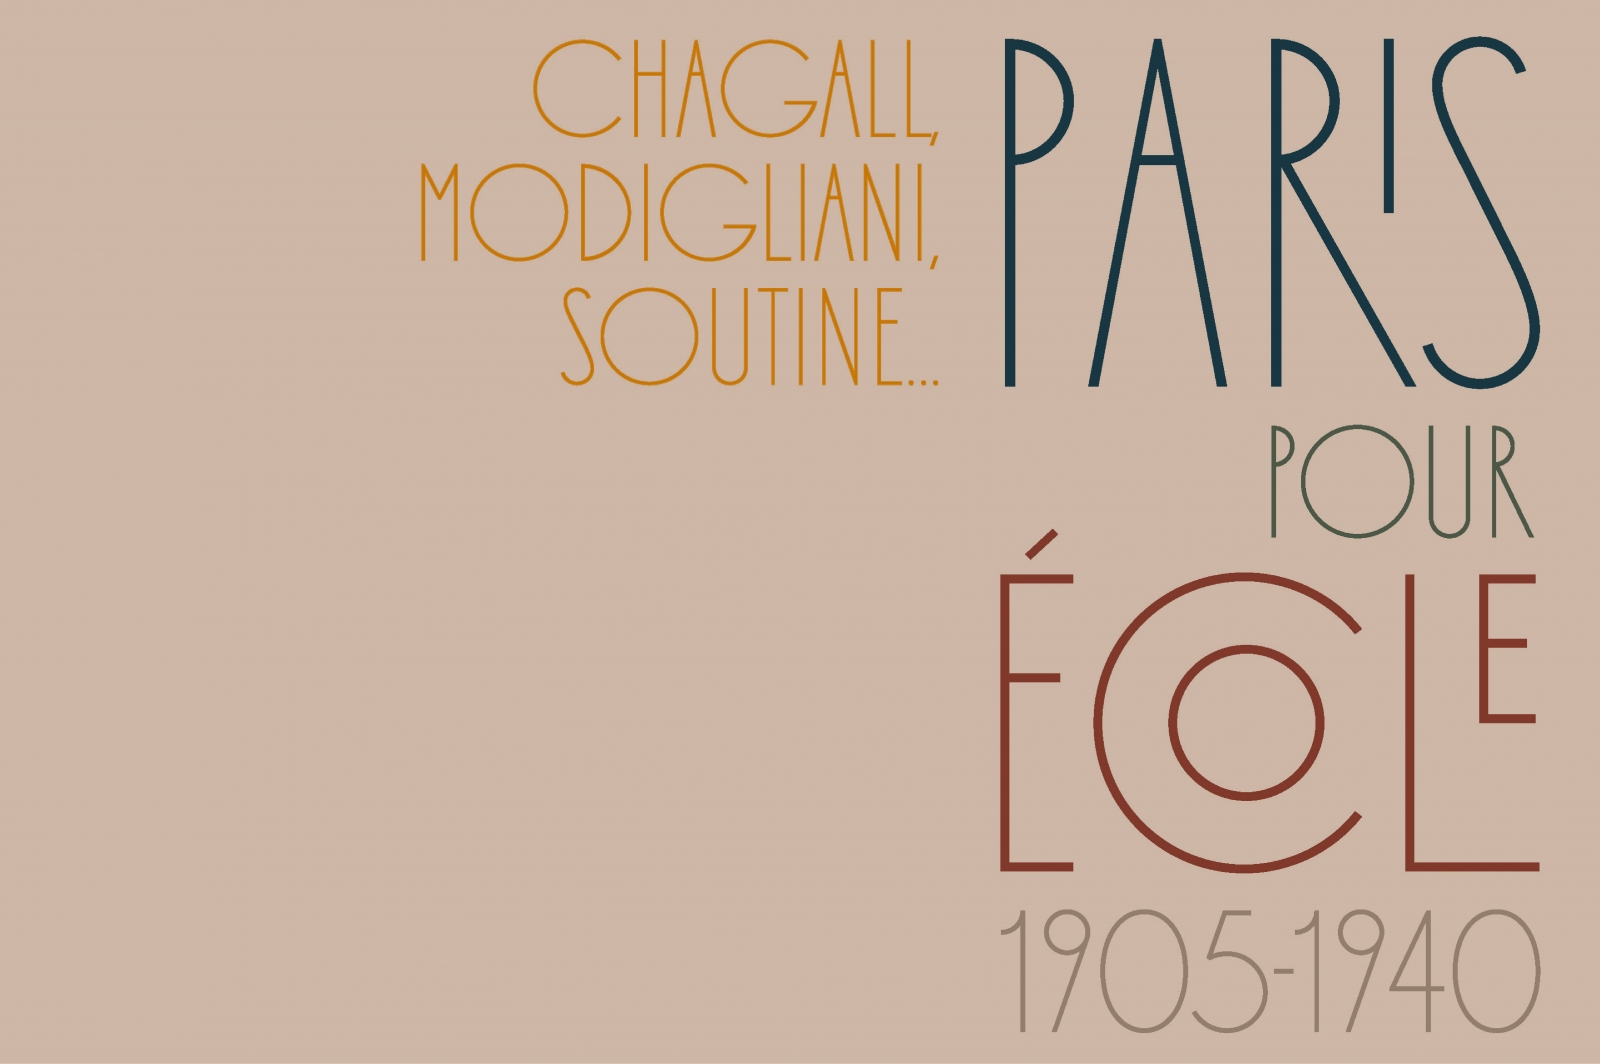 Paris pour École 1905-1940